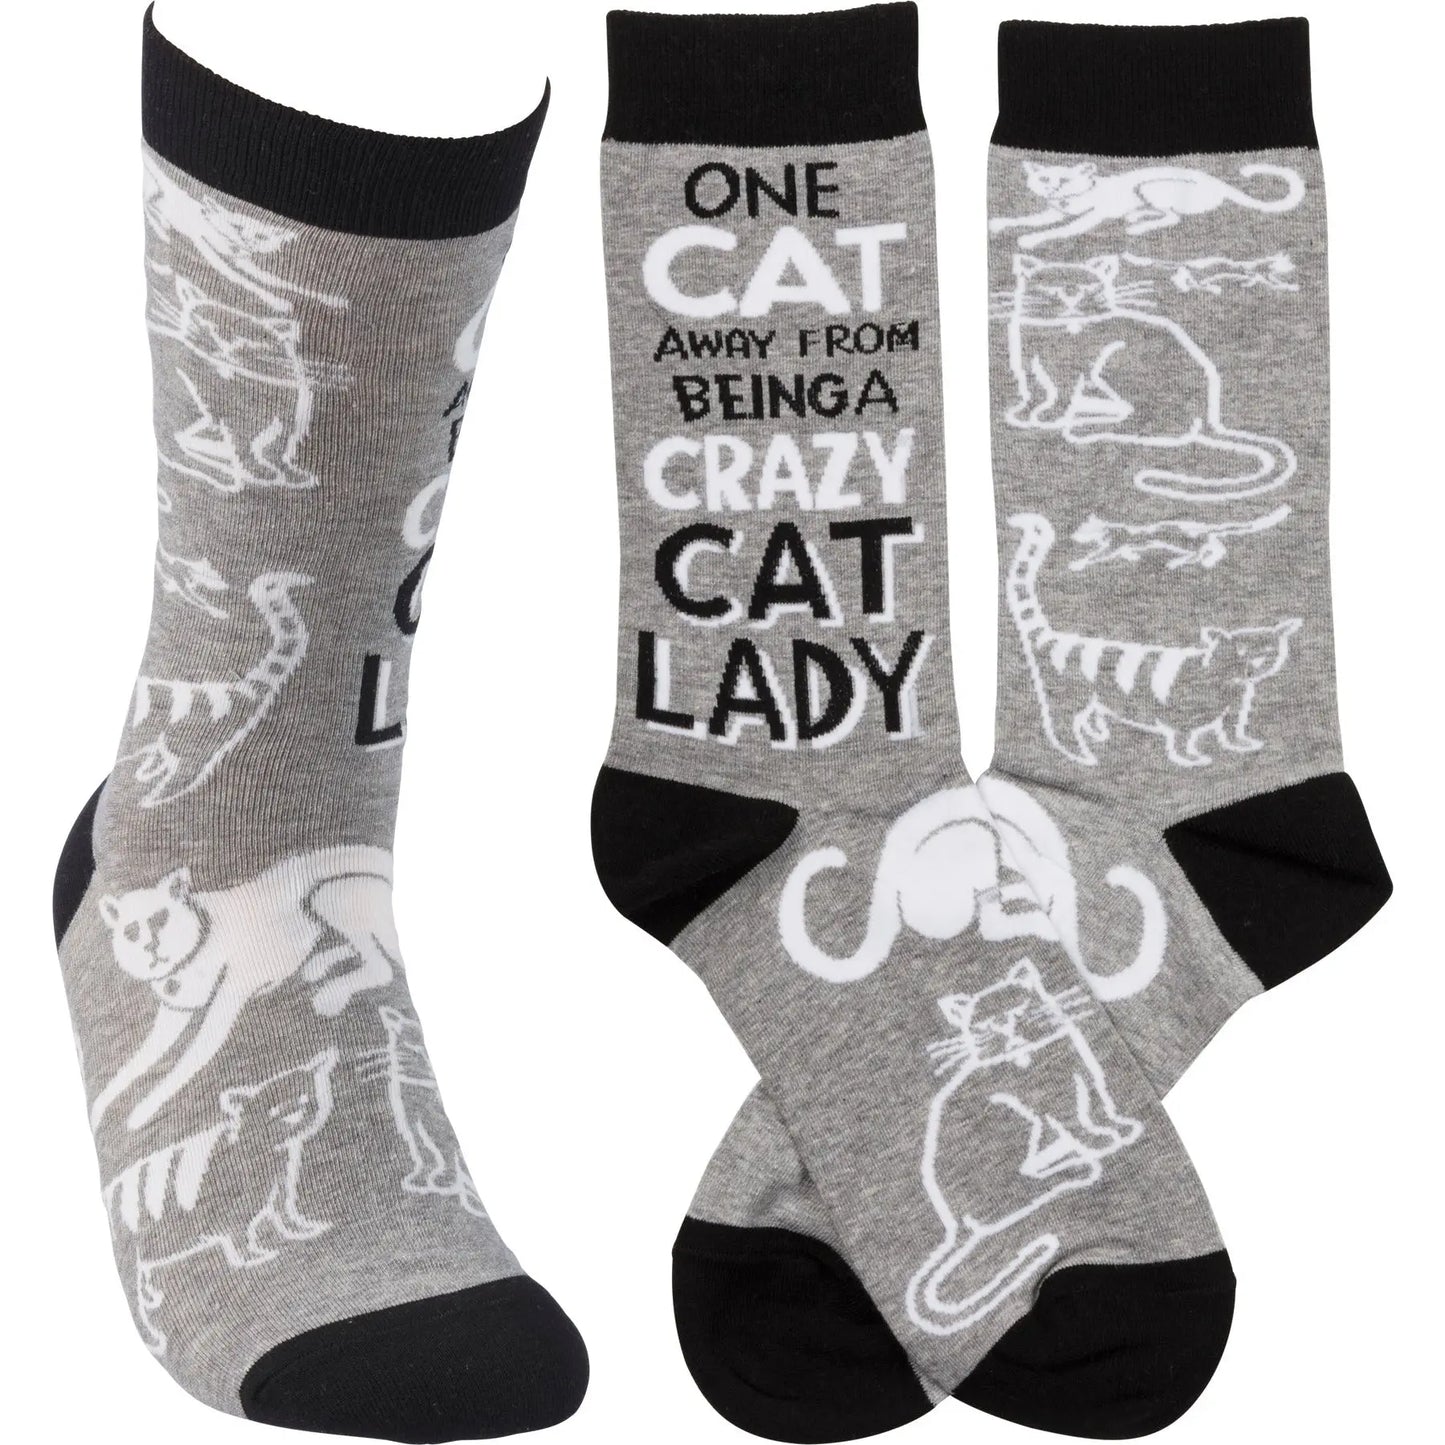 Primitives by Kathy -"Crazy Cat Lady" Socks PRIMITIVES BY KATHY